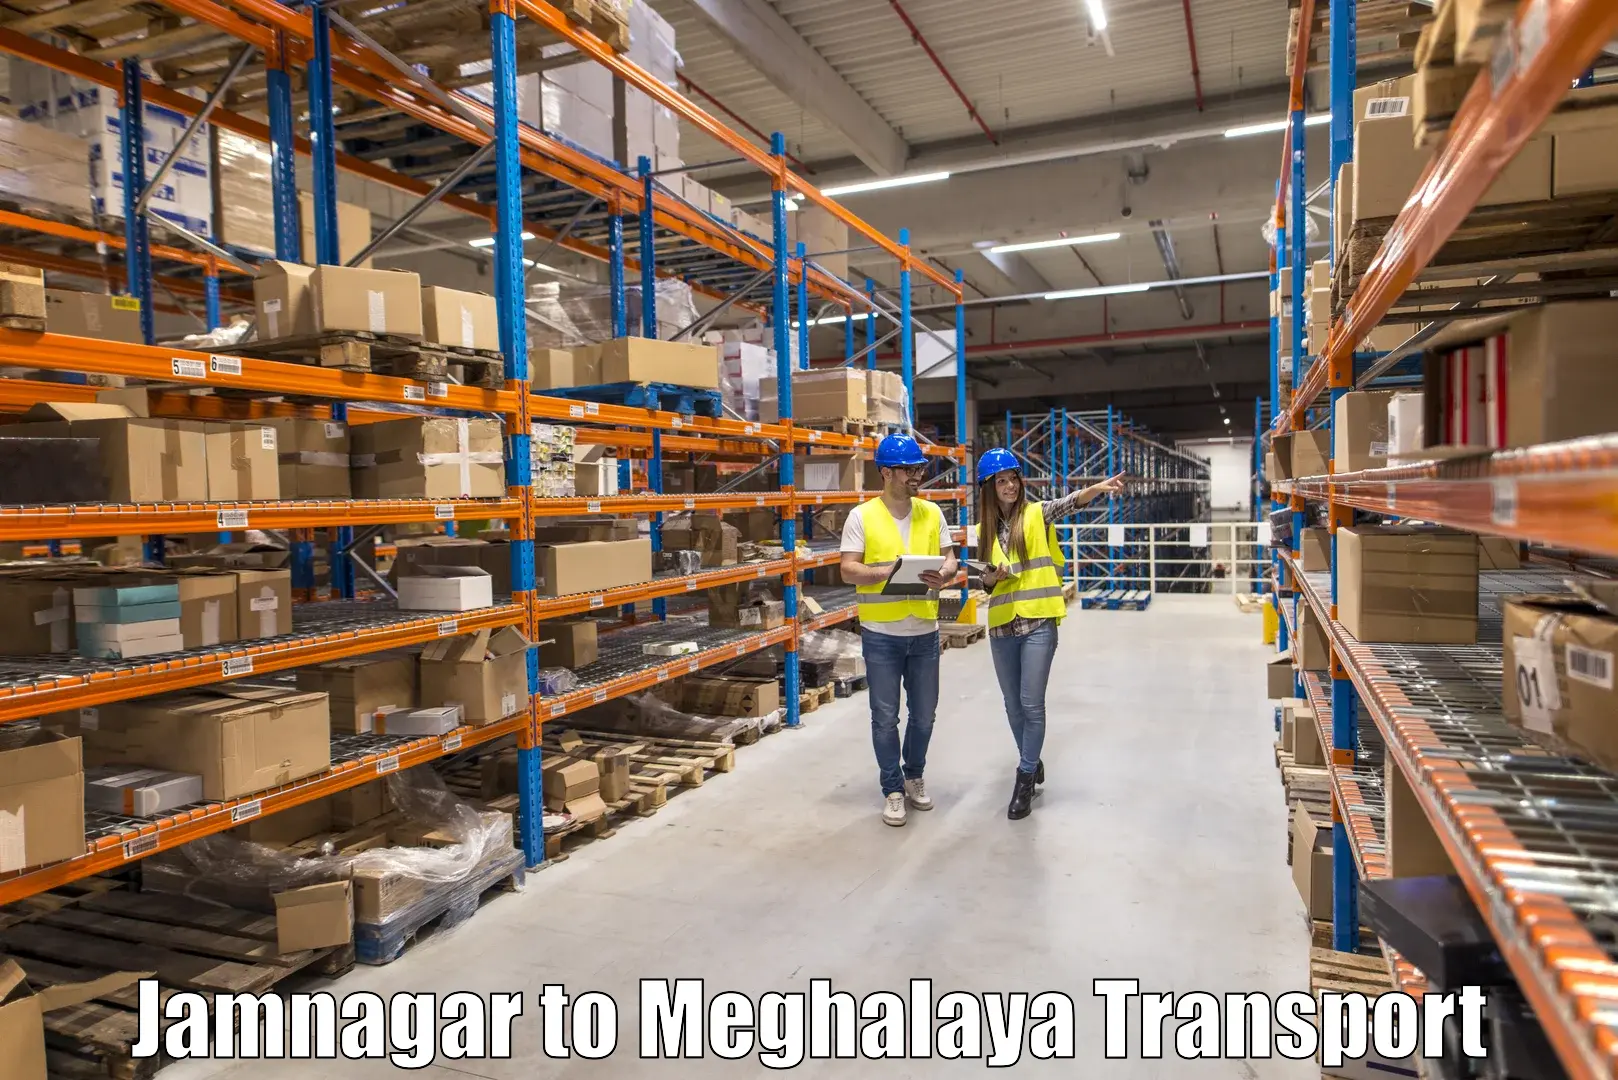 Container transportation services Jamnagar to Meghalaya